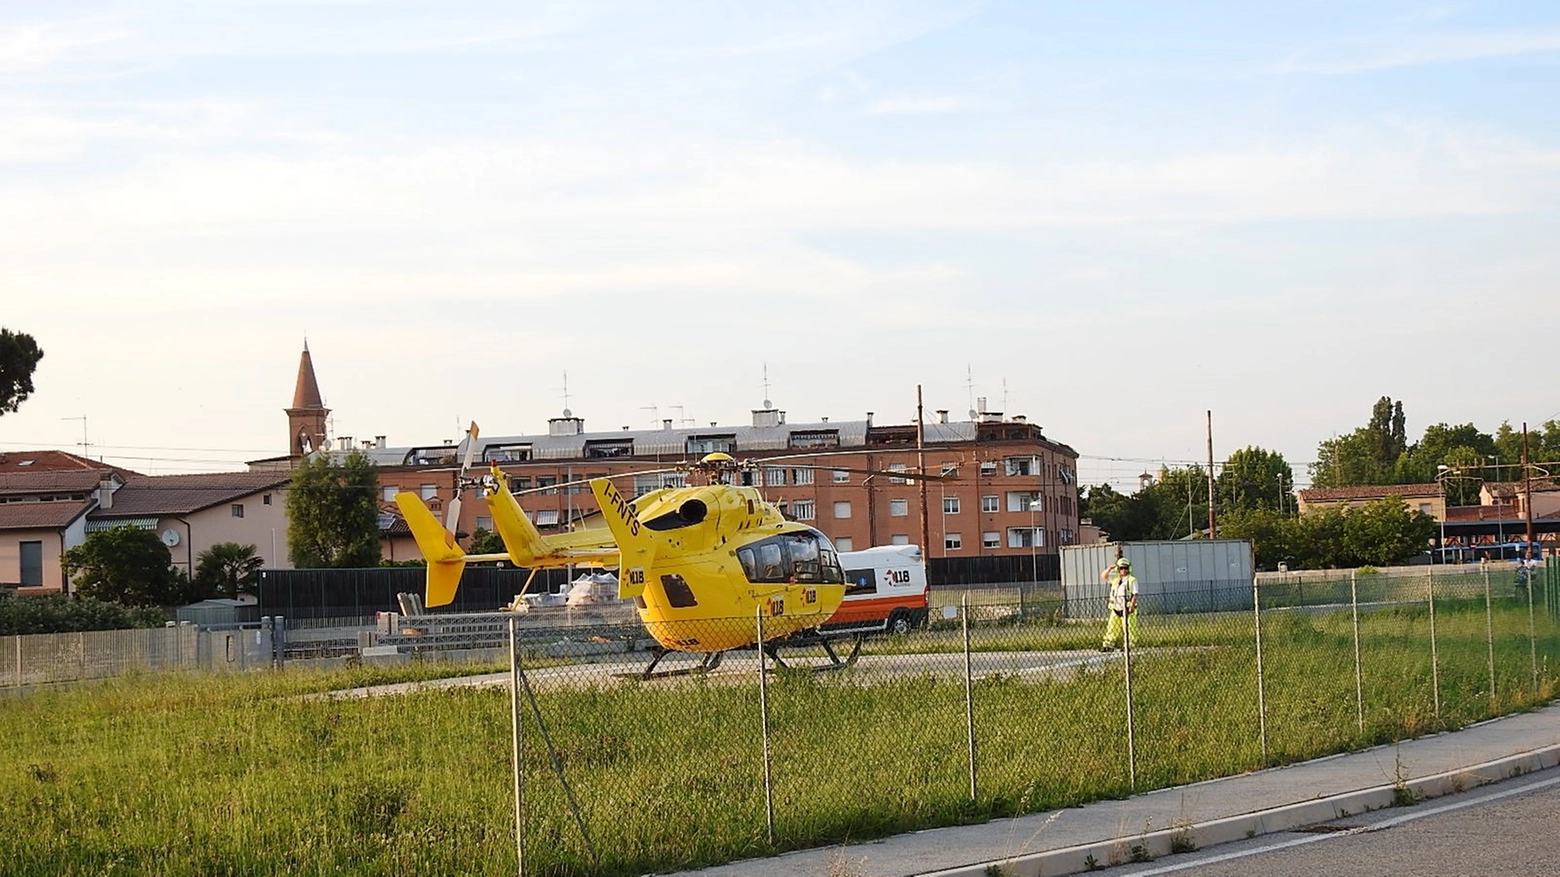  L'elicottero è atterrato nella piazzola nei pressi del sottopasso Lugo sud (Scardovi)